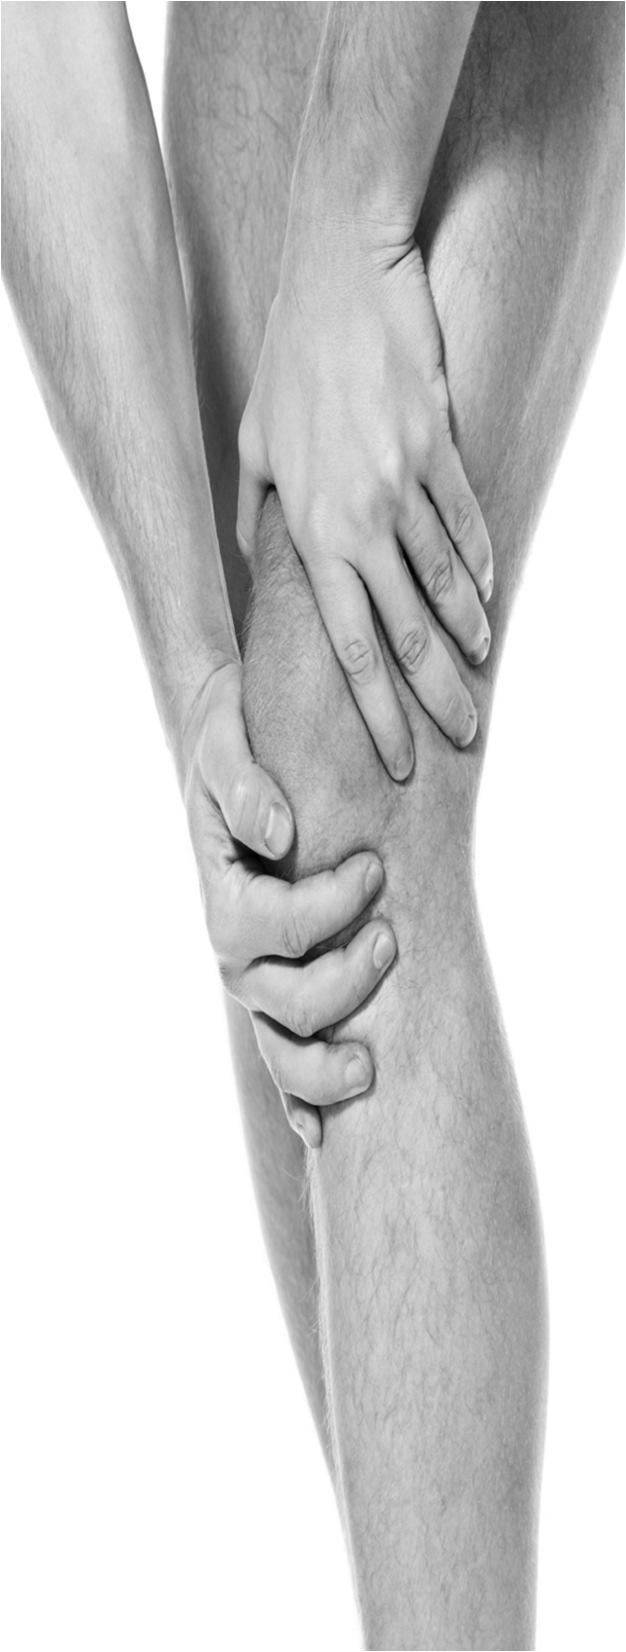 Anterior Knee Pain + Syndrome מקרה שהיה.